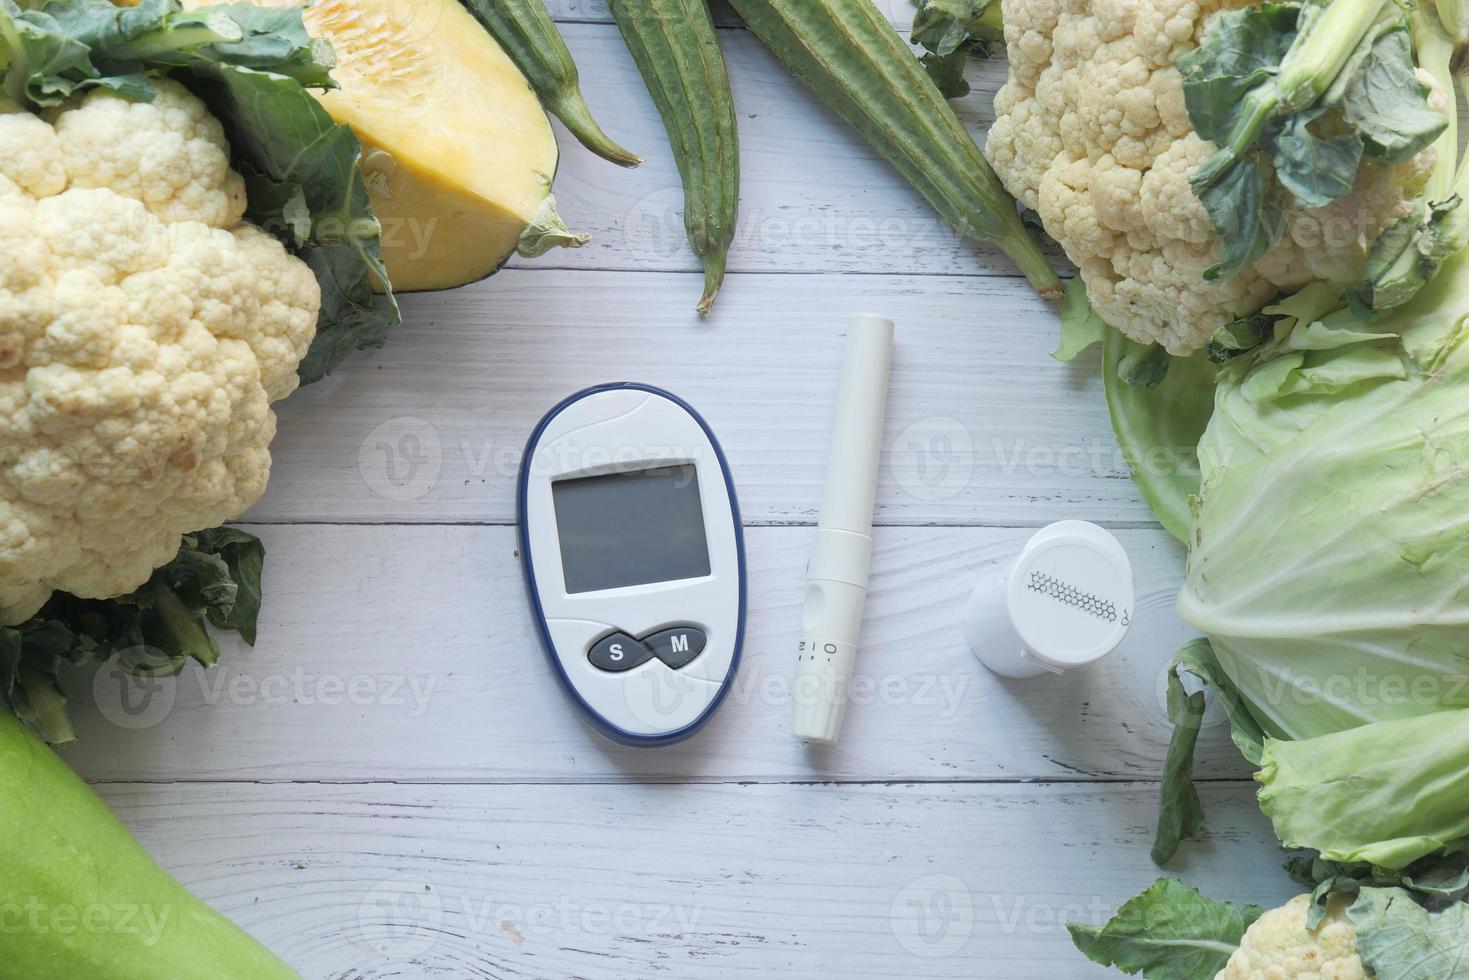 ferramentas de medição para diabéticos e vegetais frescos na mesa foto